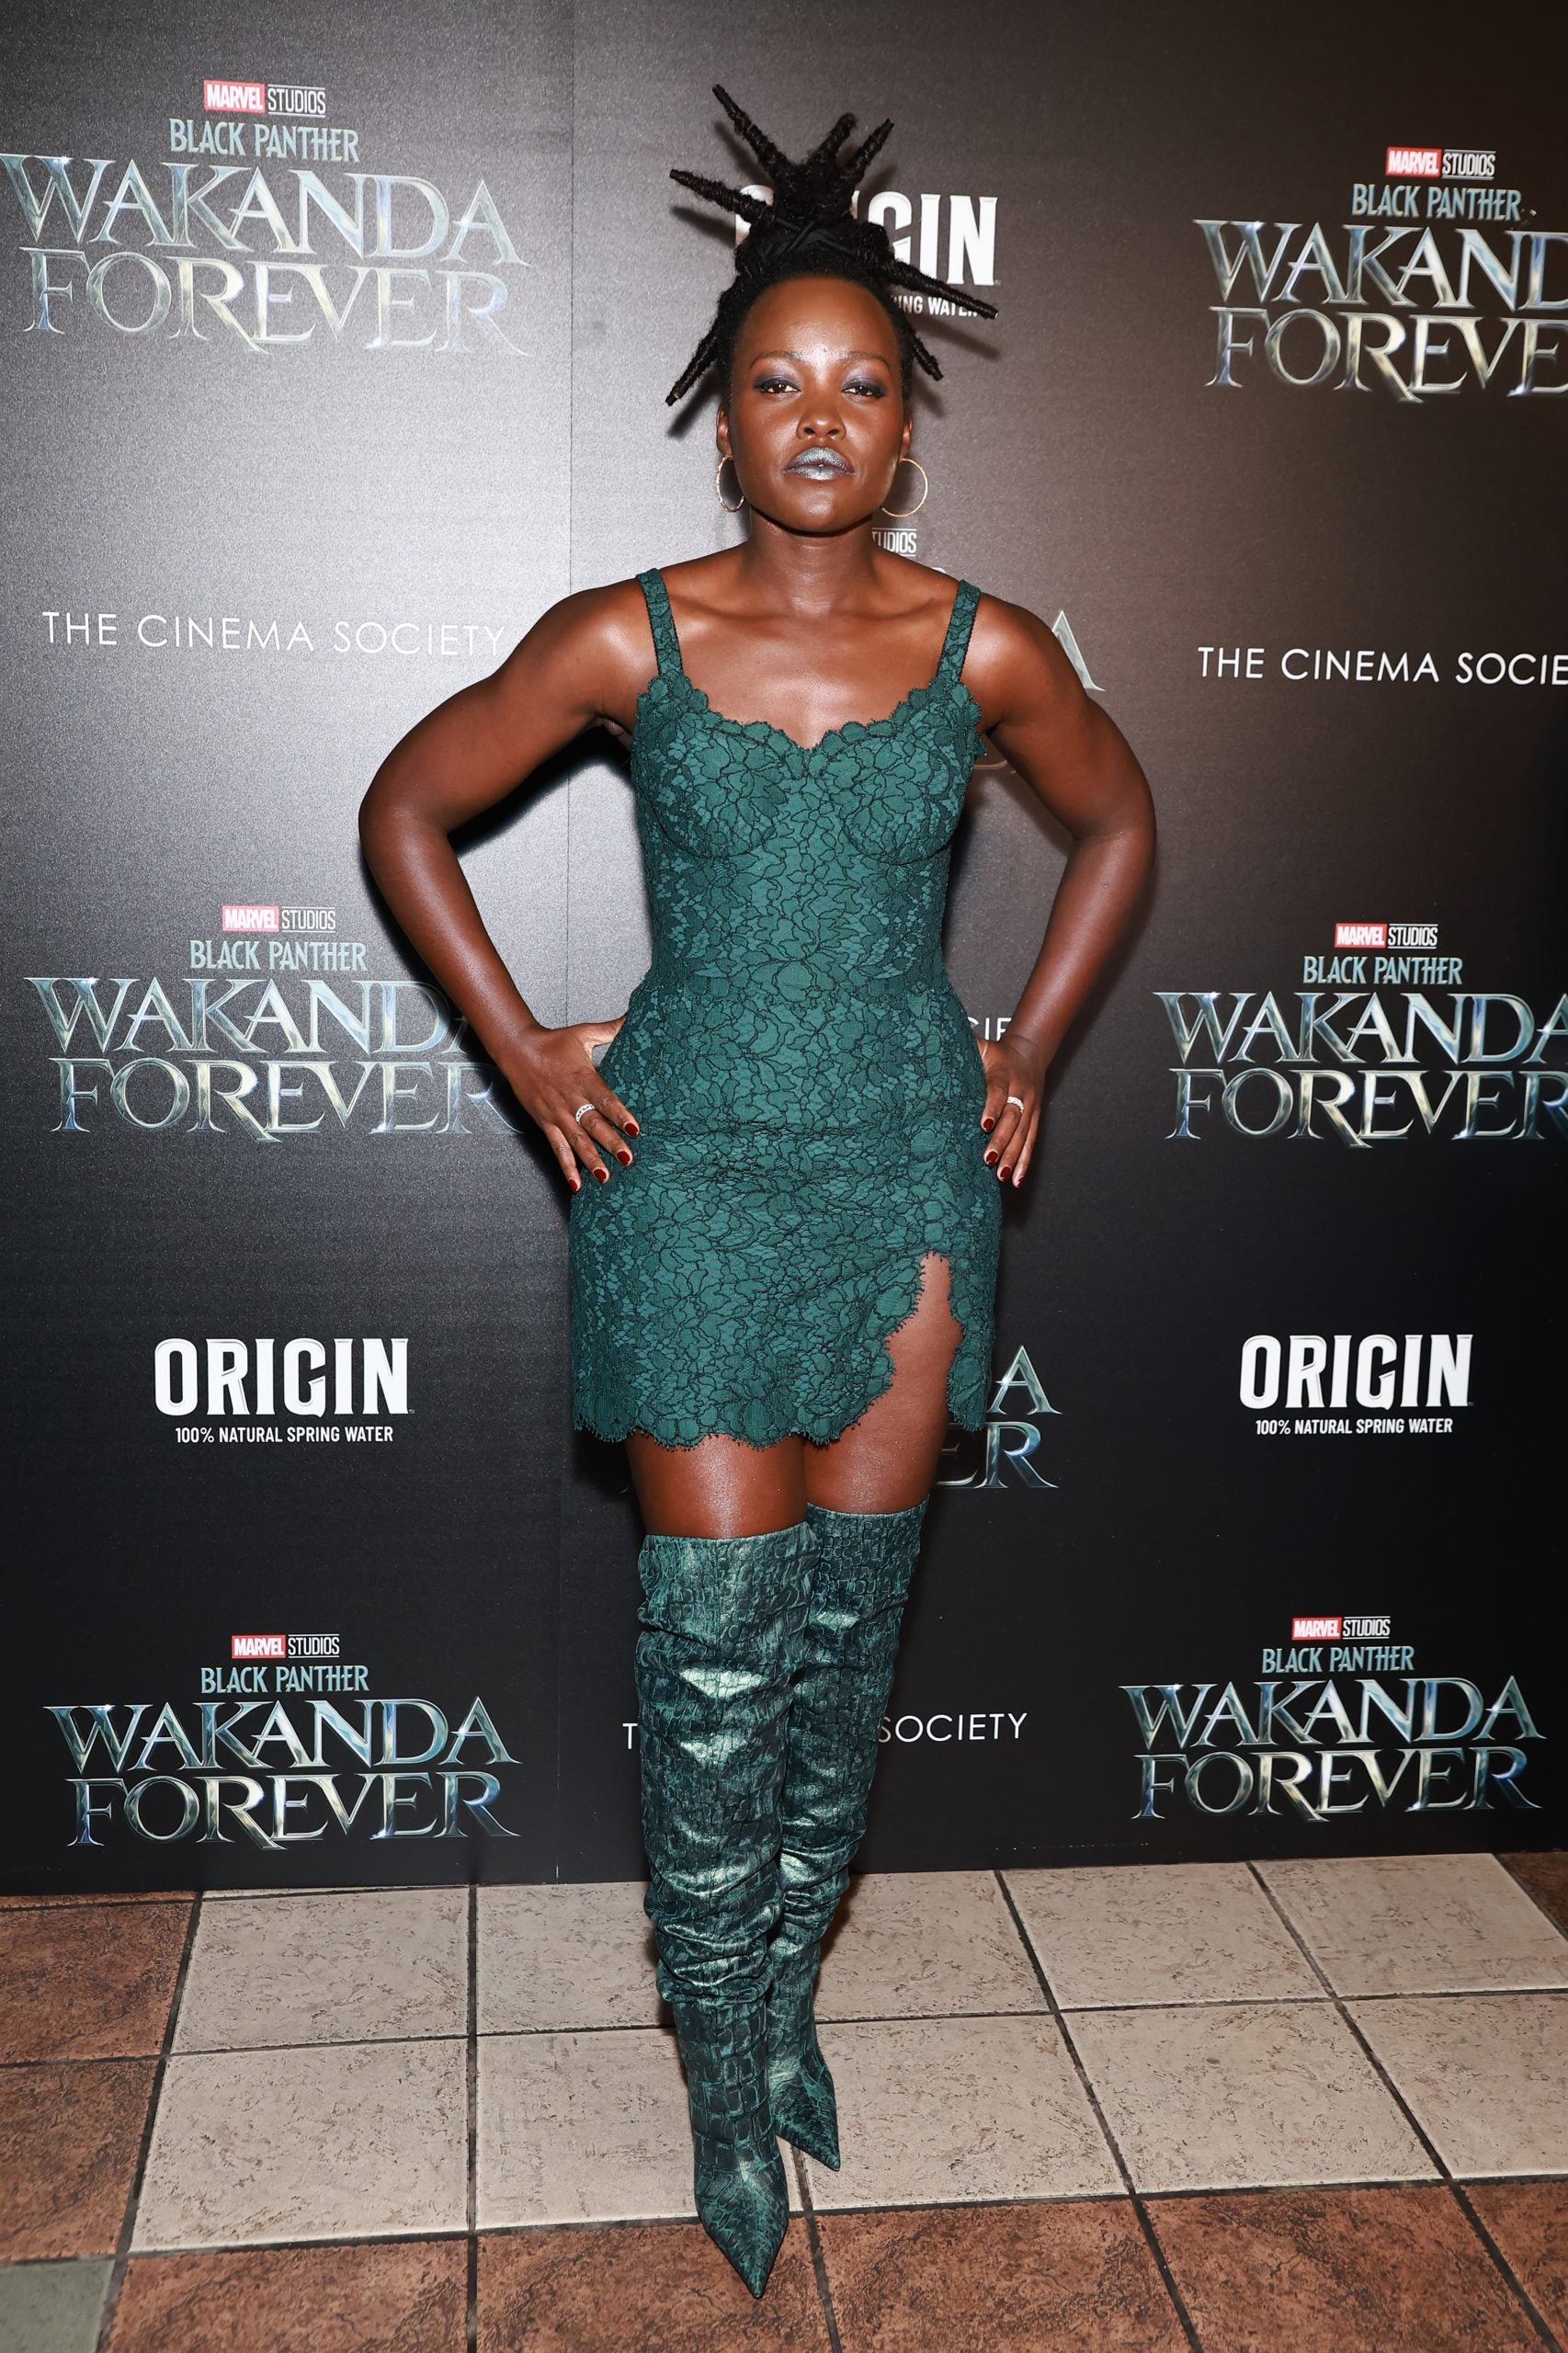 A Look At Lupita Nyong’o’s Wakanda Forever Press Run Looks